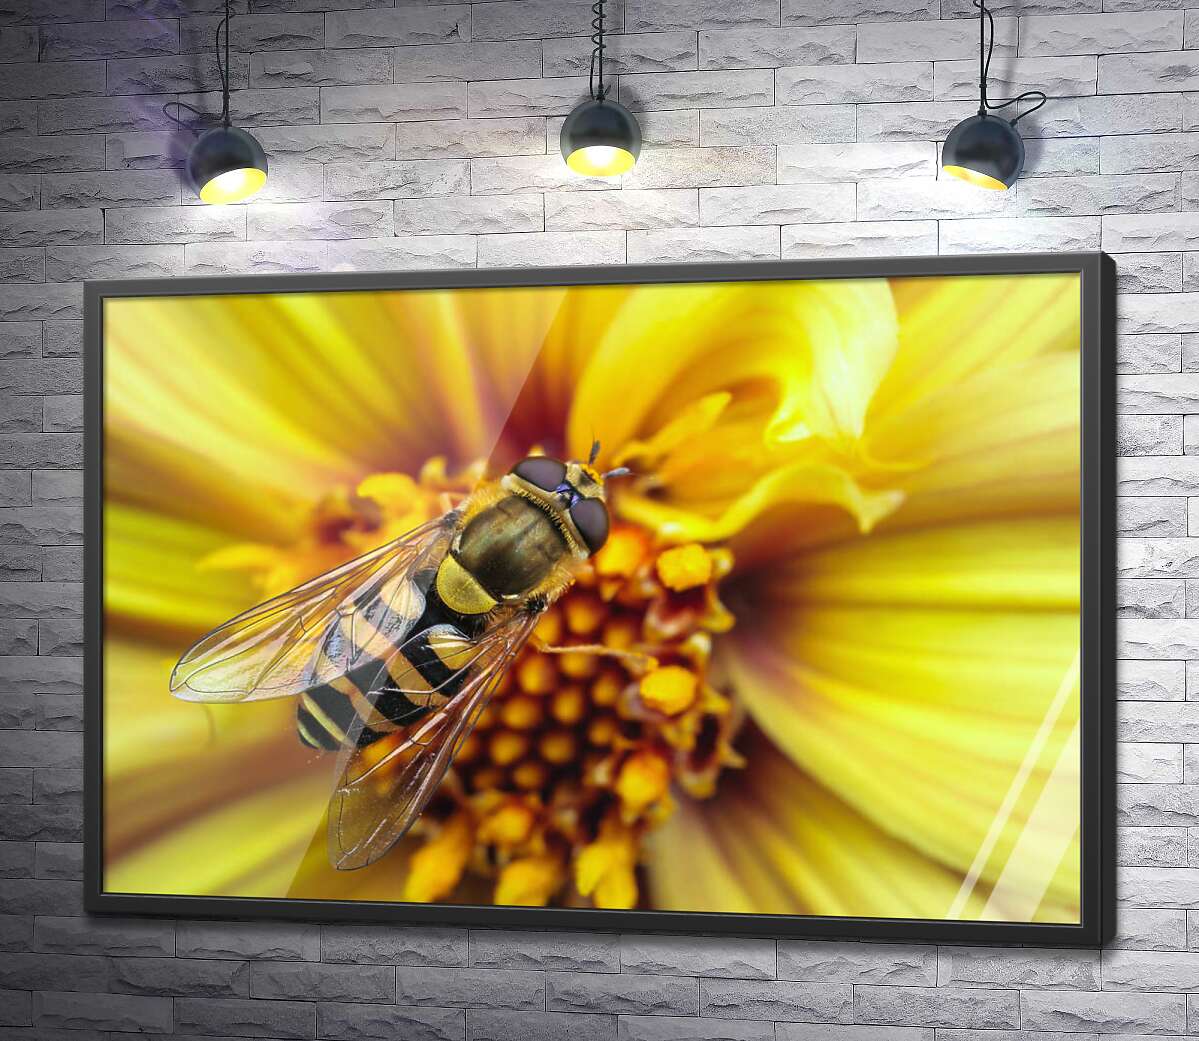 постер Хрупкая пчела опыляет солнечно-желтый цветок